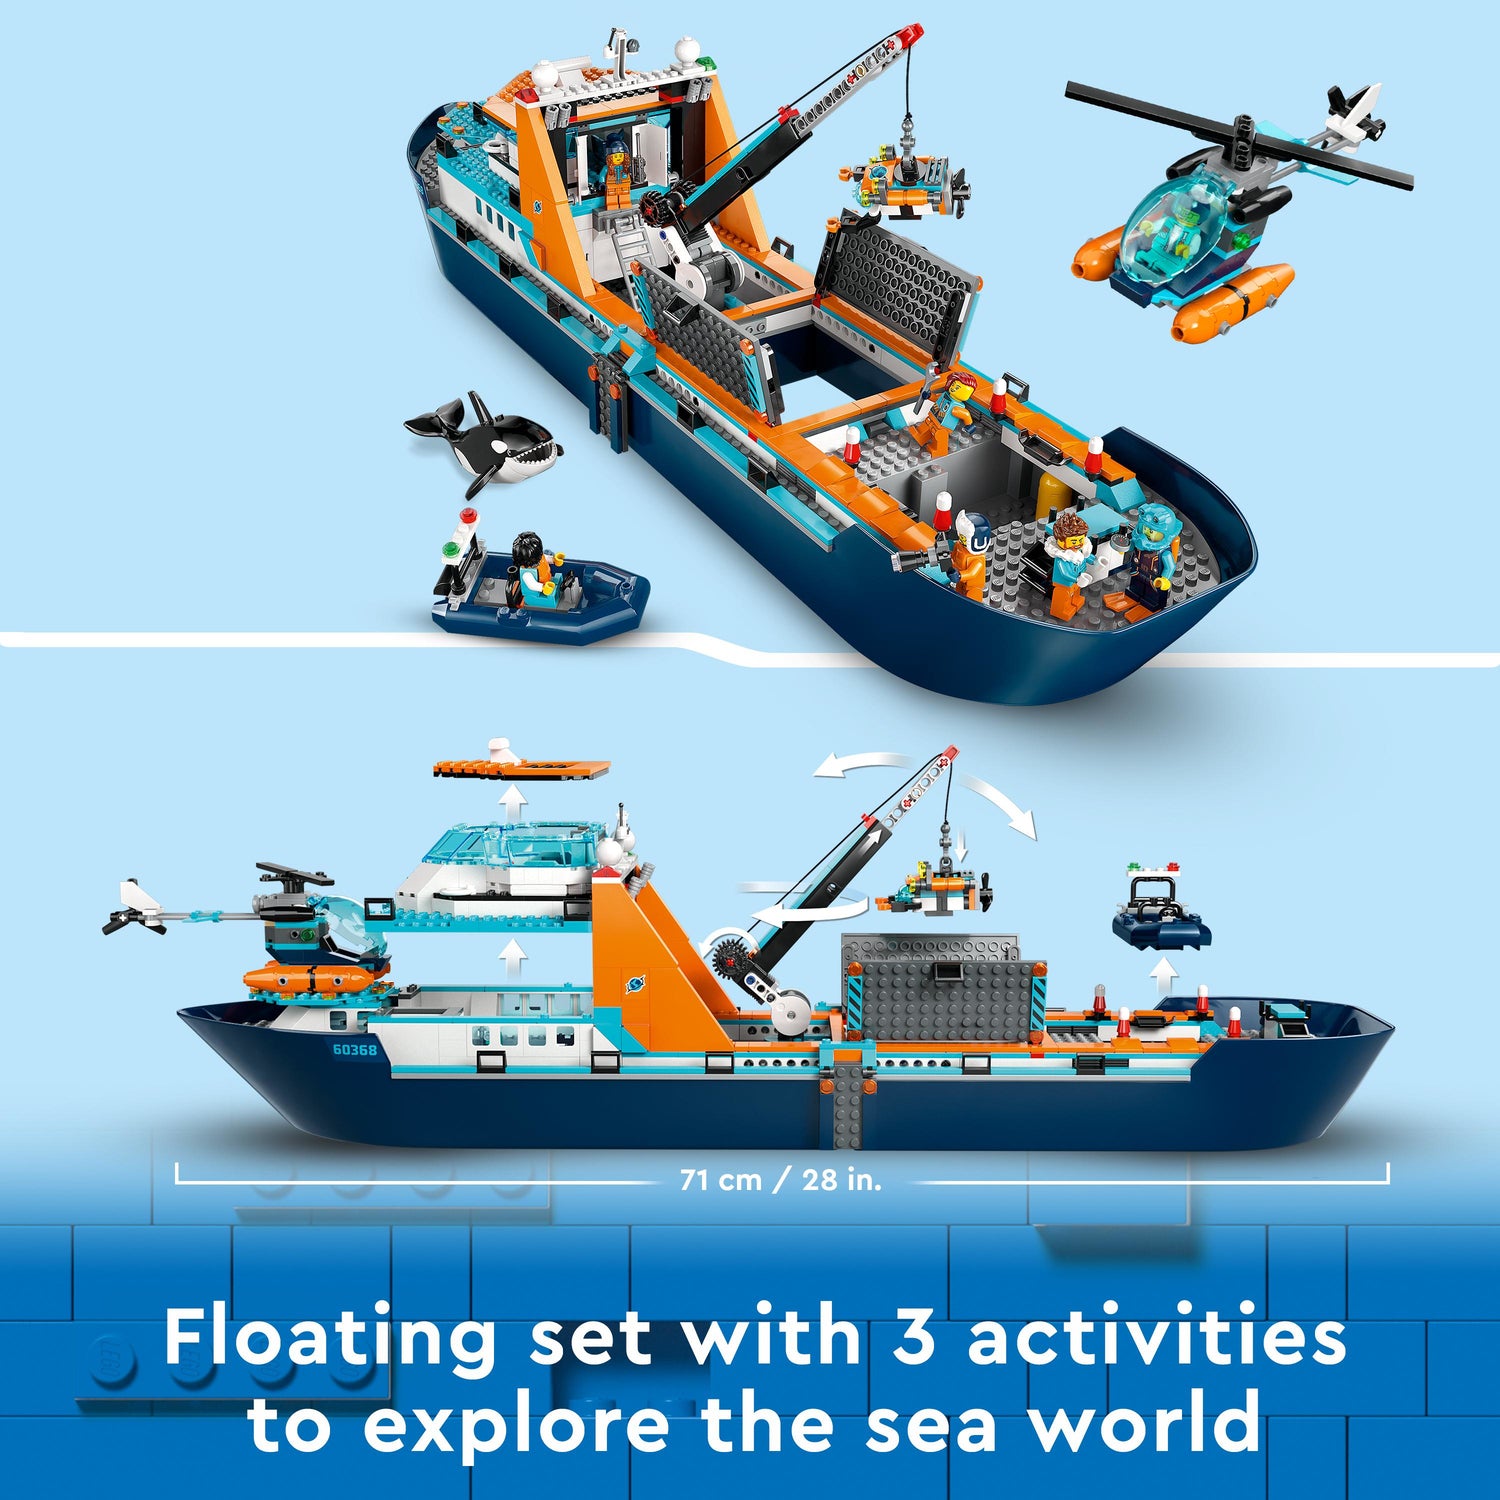 LEGO® City Arctic Explorer Ship Large Boat Toy